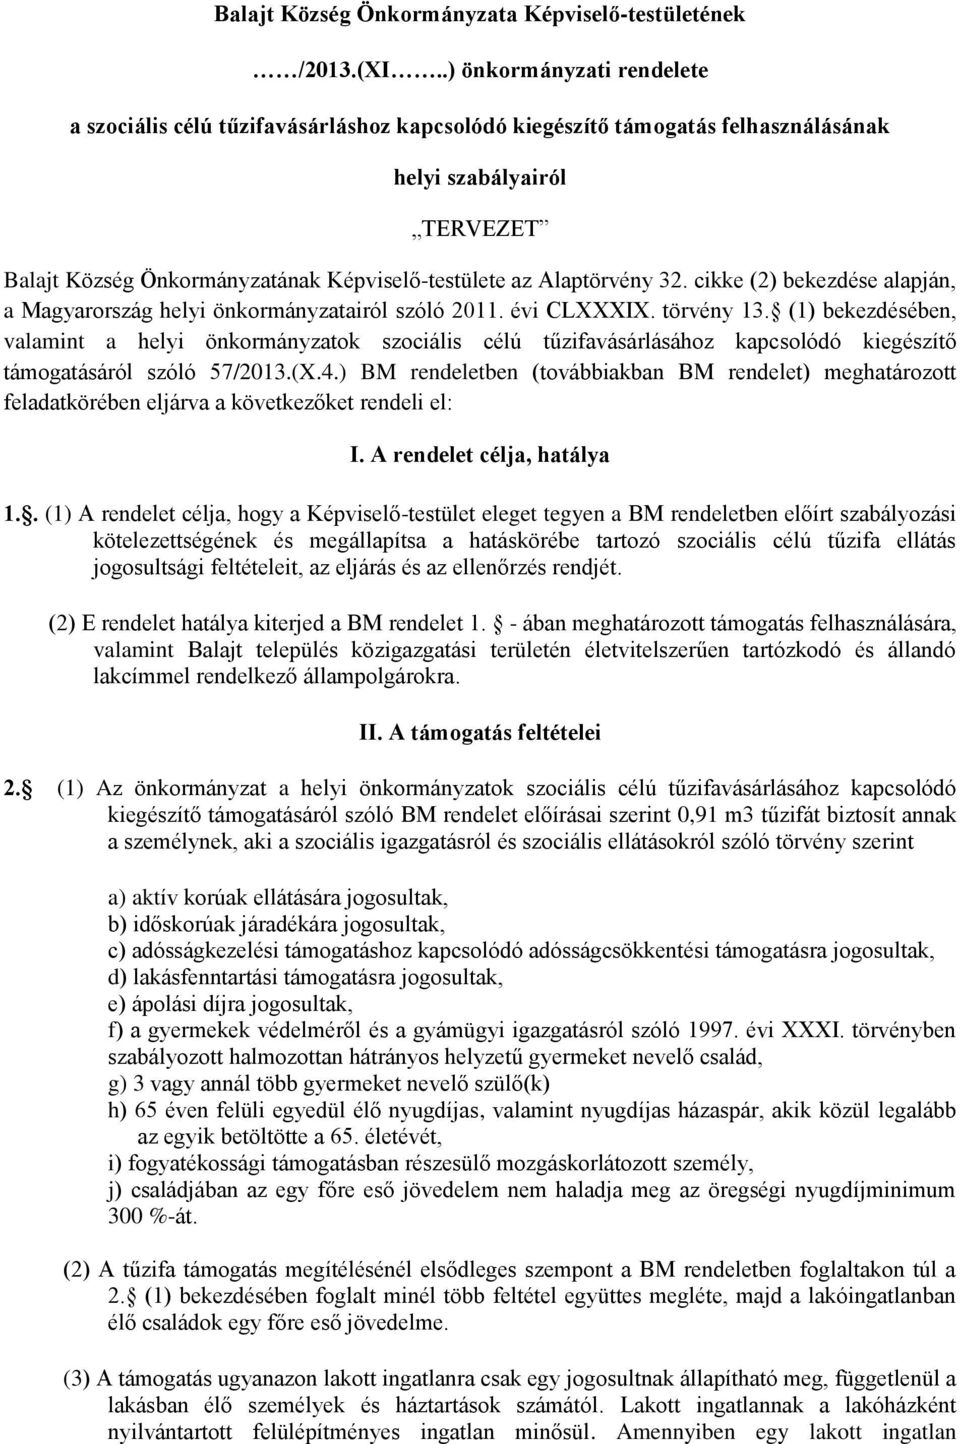 Alaptörvény 32. cikke (2) bekezdése alapján, a Magyarország helyi önkormányzatairól szóló 2011. évi CLXXXIX. törvény 13.